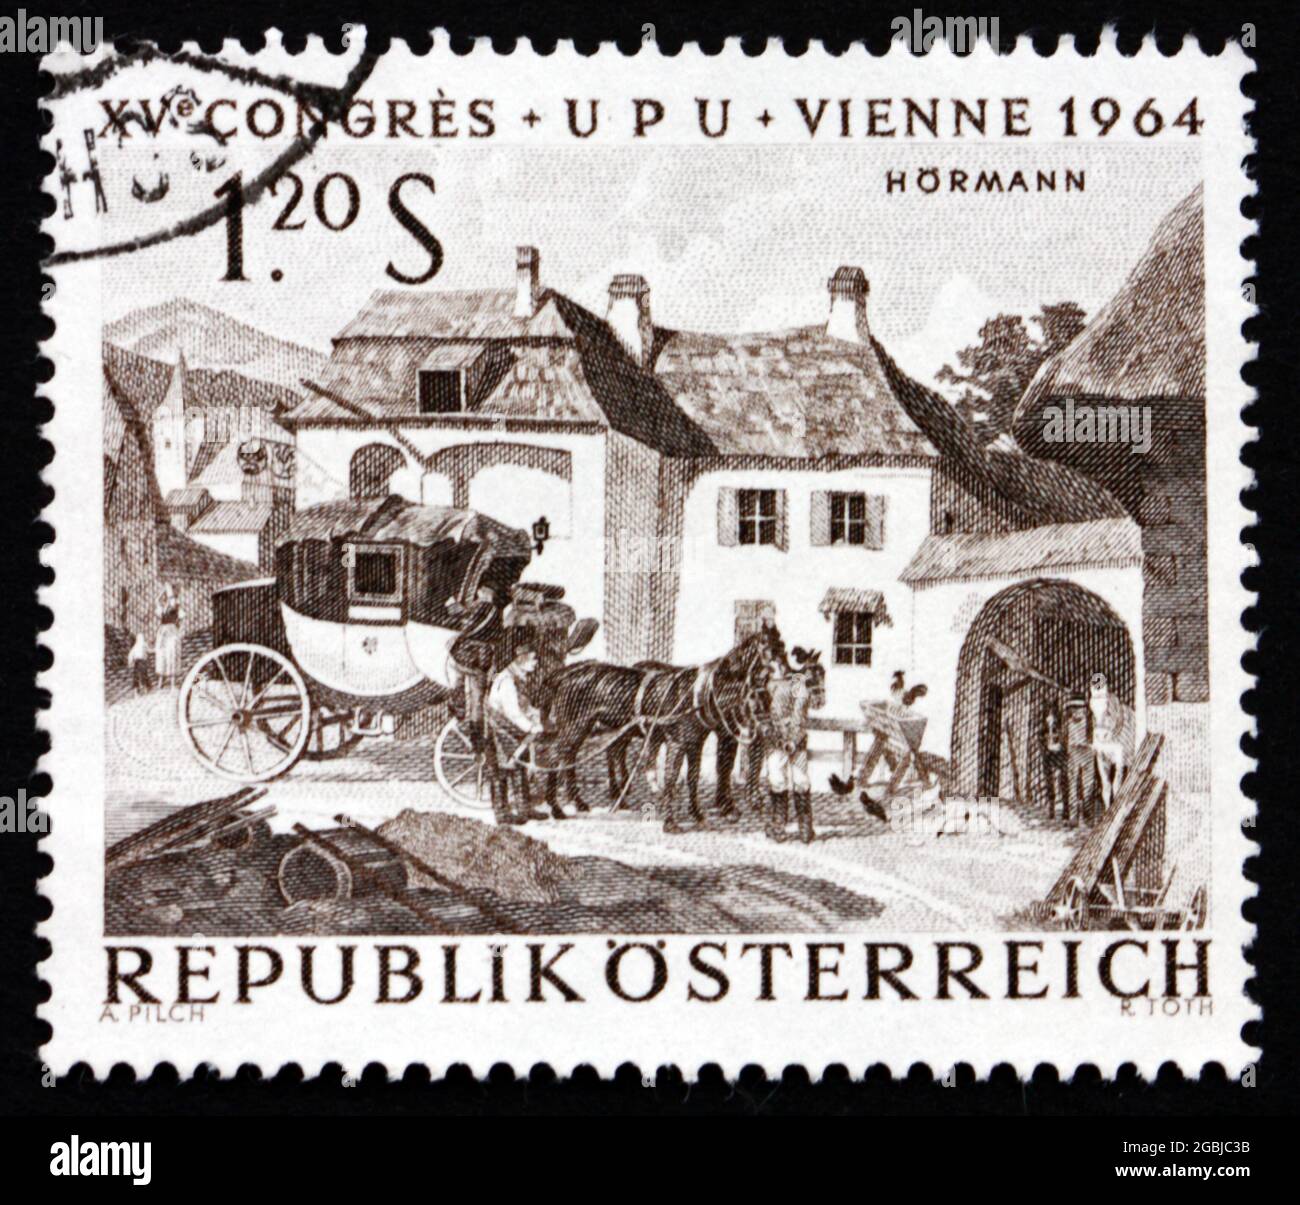 AUTRICHE - VERS 1964: Un timbre imprimé en Autriche montre des chevaux en évolution à la station de relais, peinture par Julius Hormann, vers 1964 Banque D'Images